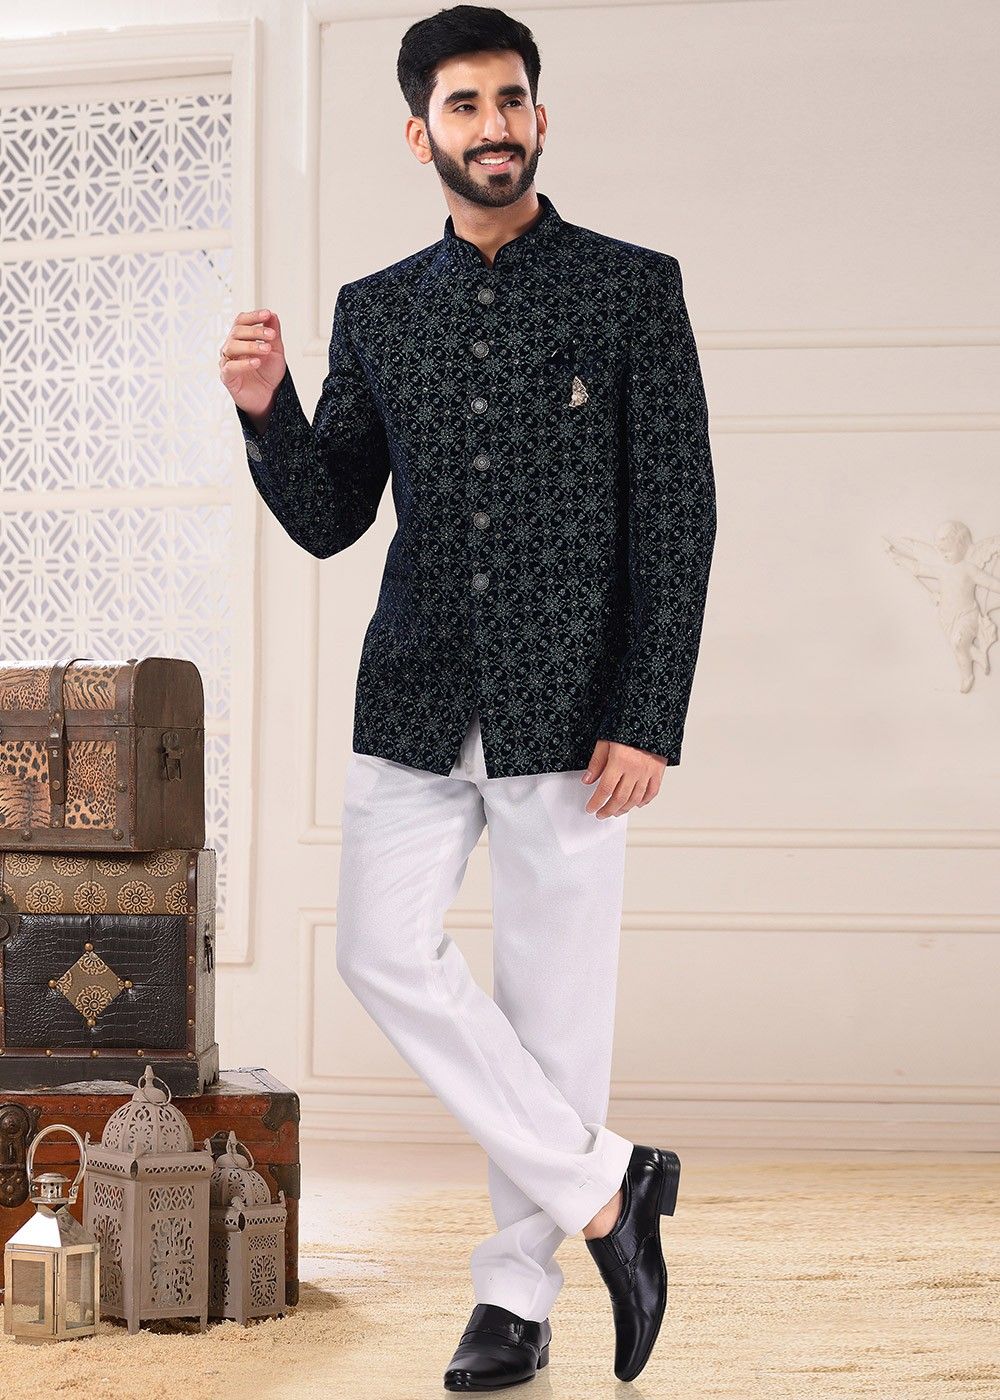 Single Piece Jodhpuri Suit for Wedding | Jodhpuri Suit for Men